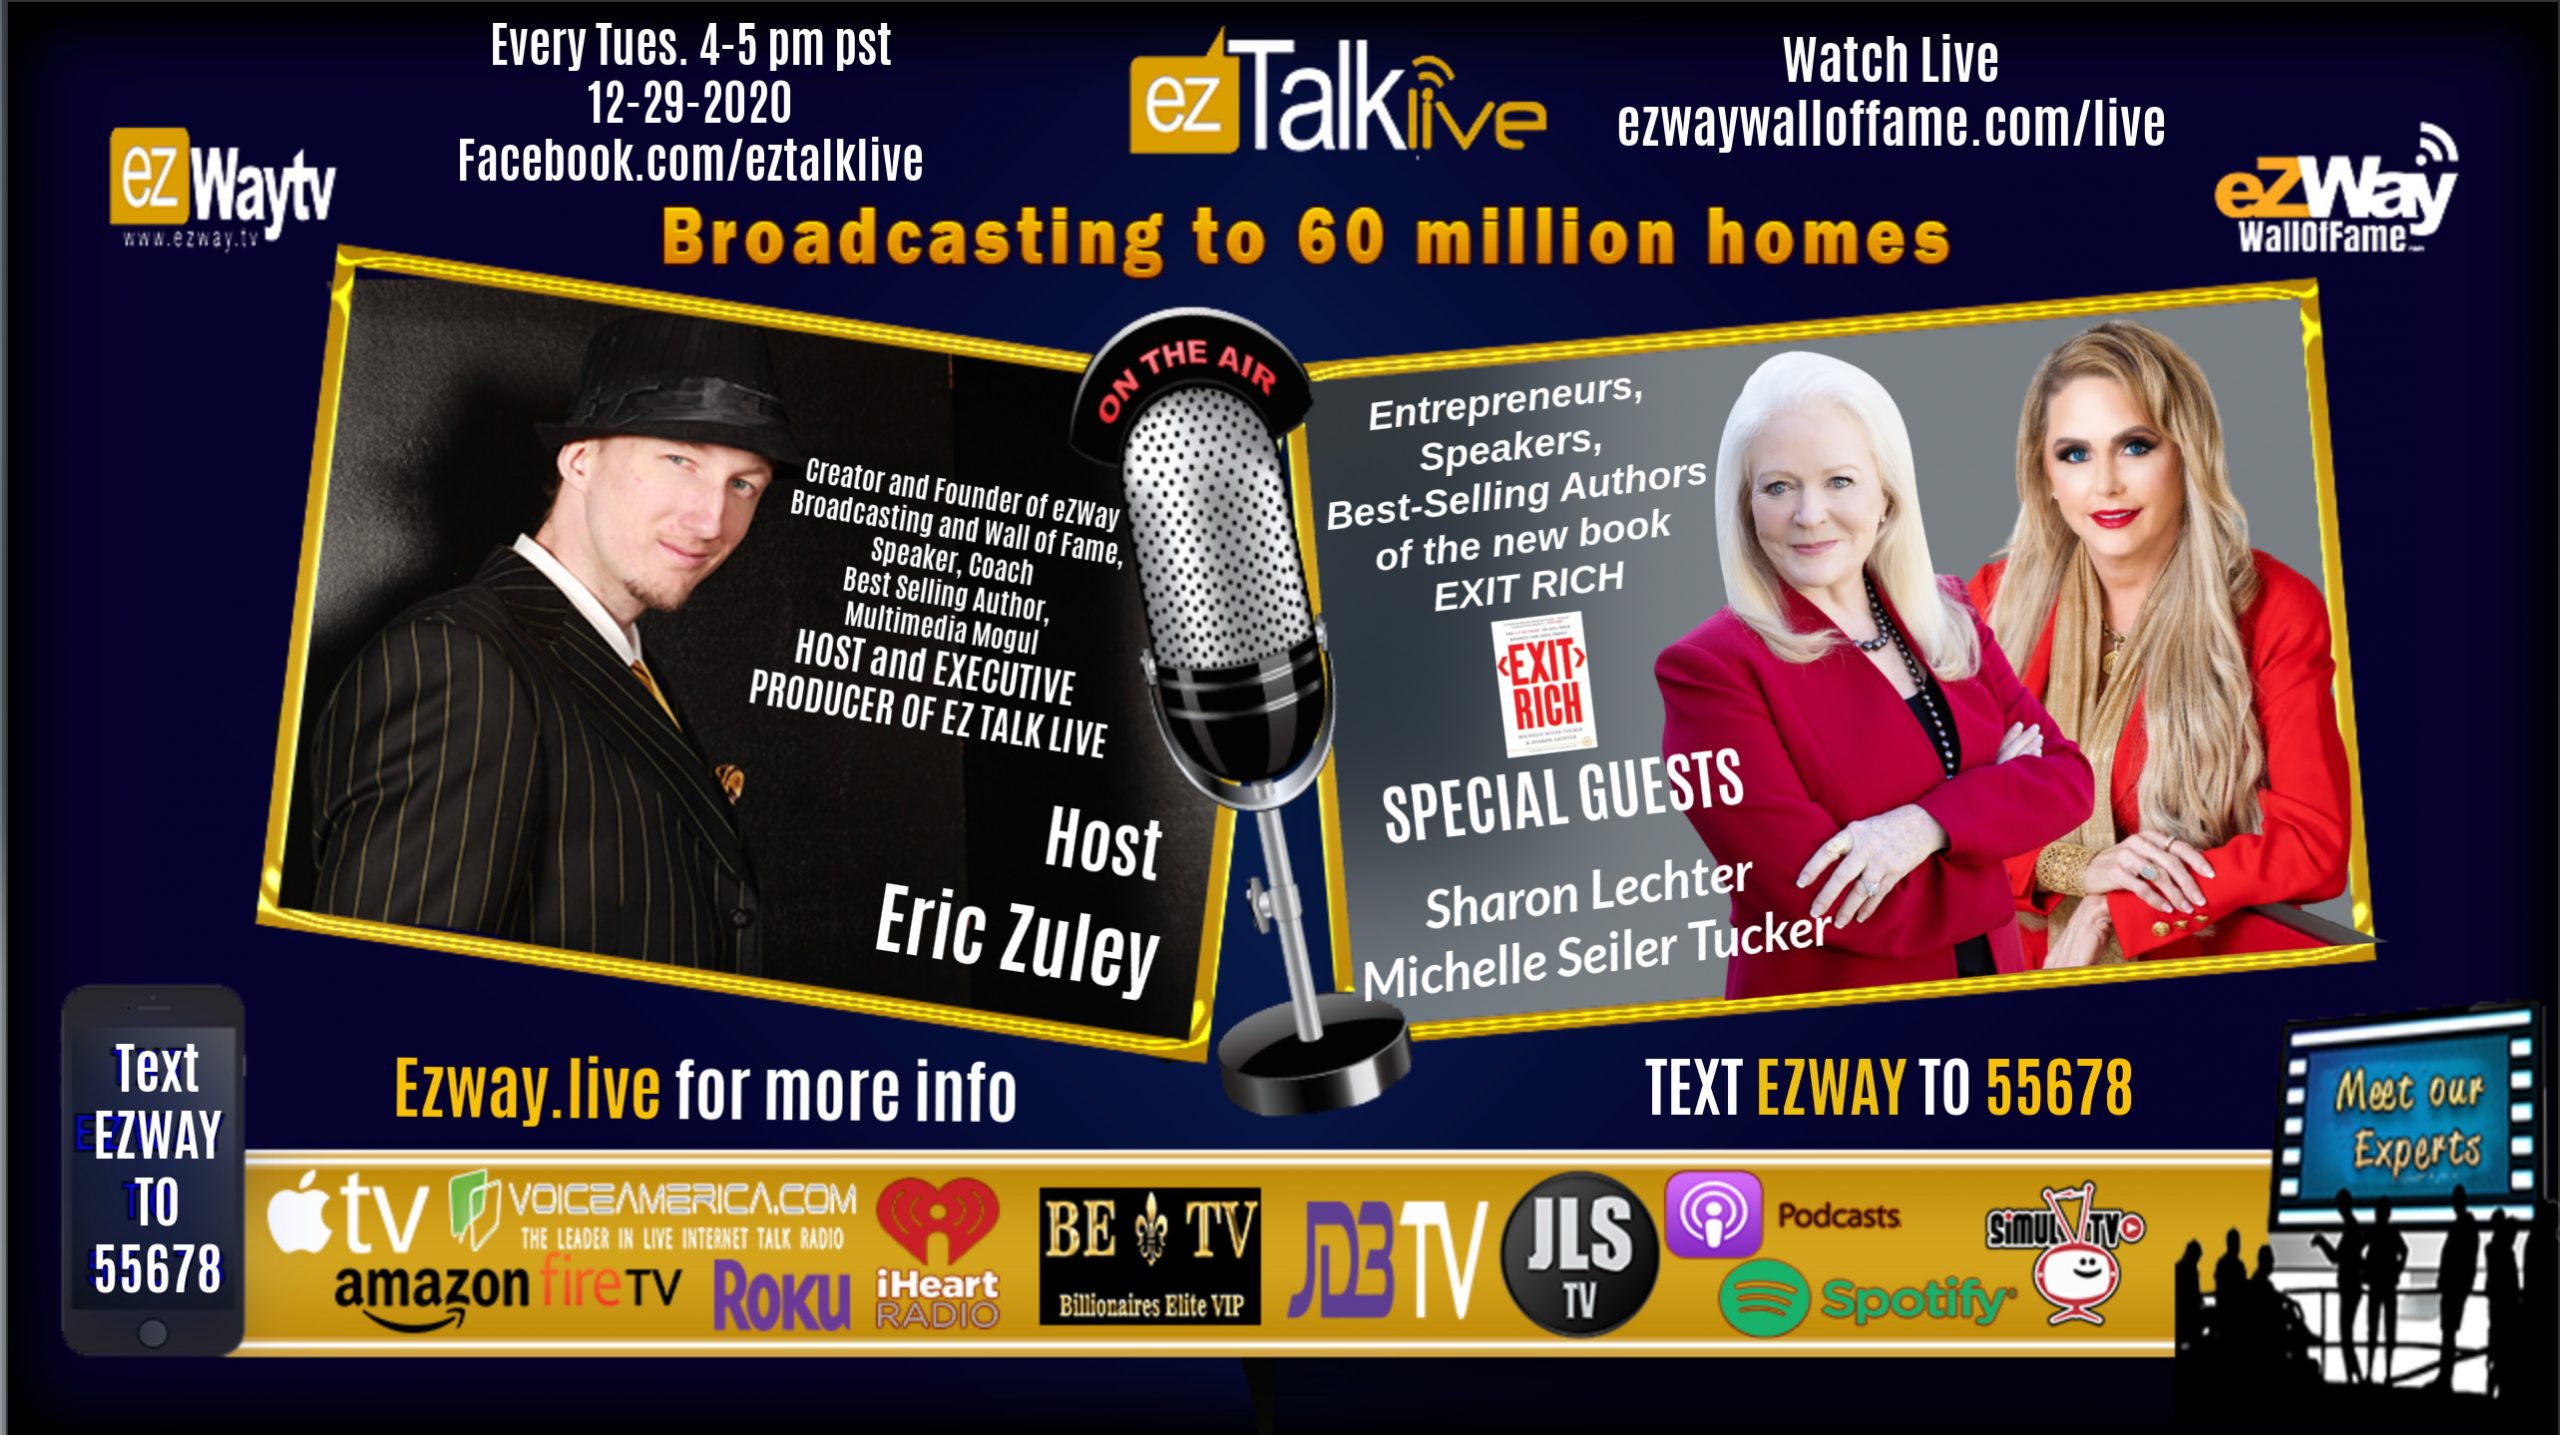 EZ TALK LIVE 12-29-2020 EXIT RICH Special Feat. Sharon Lechter and Michelle Seiler Tucker